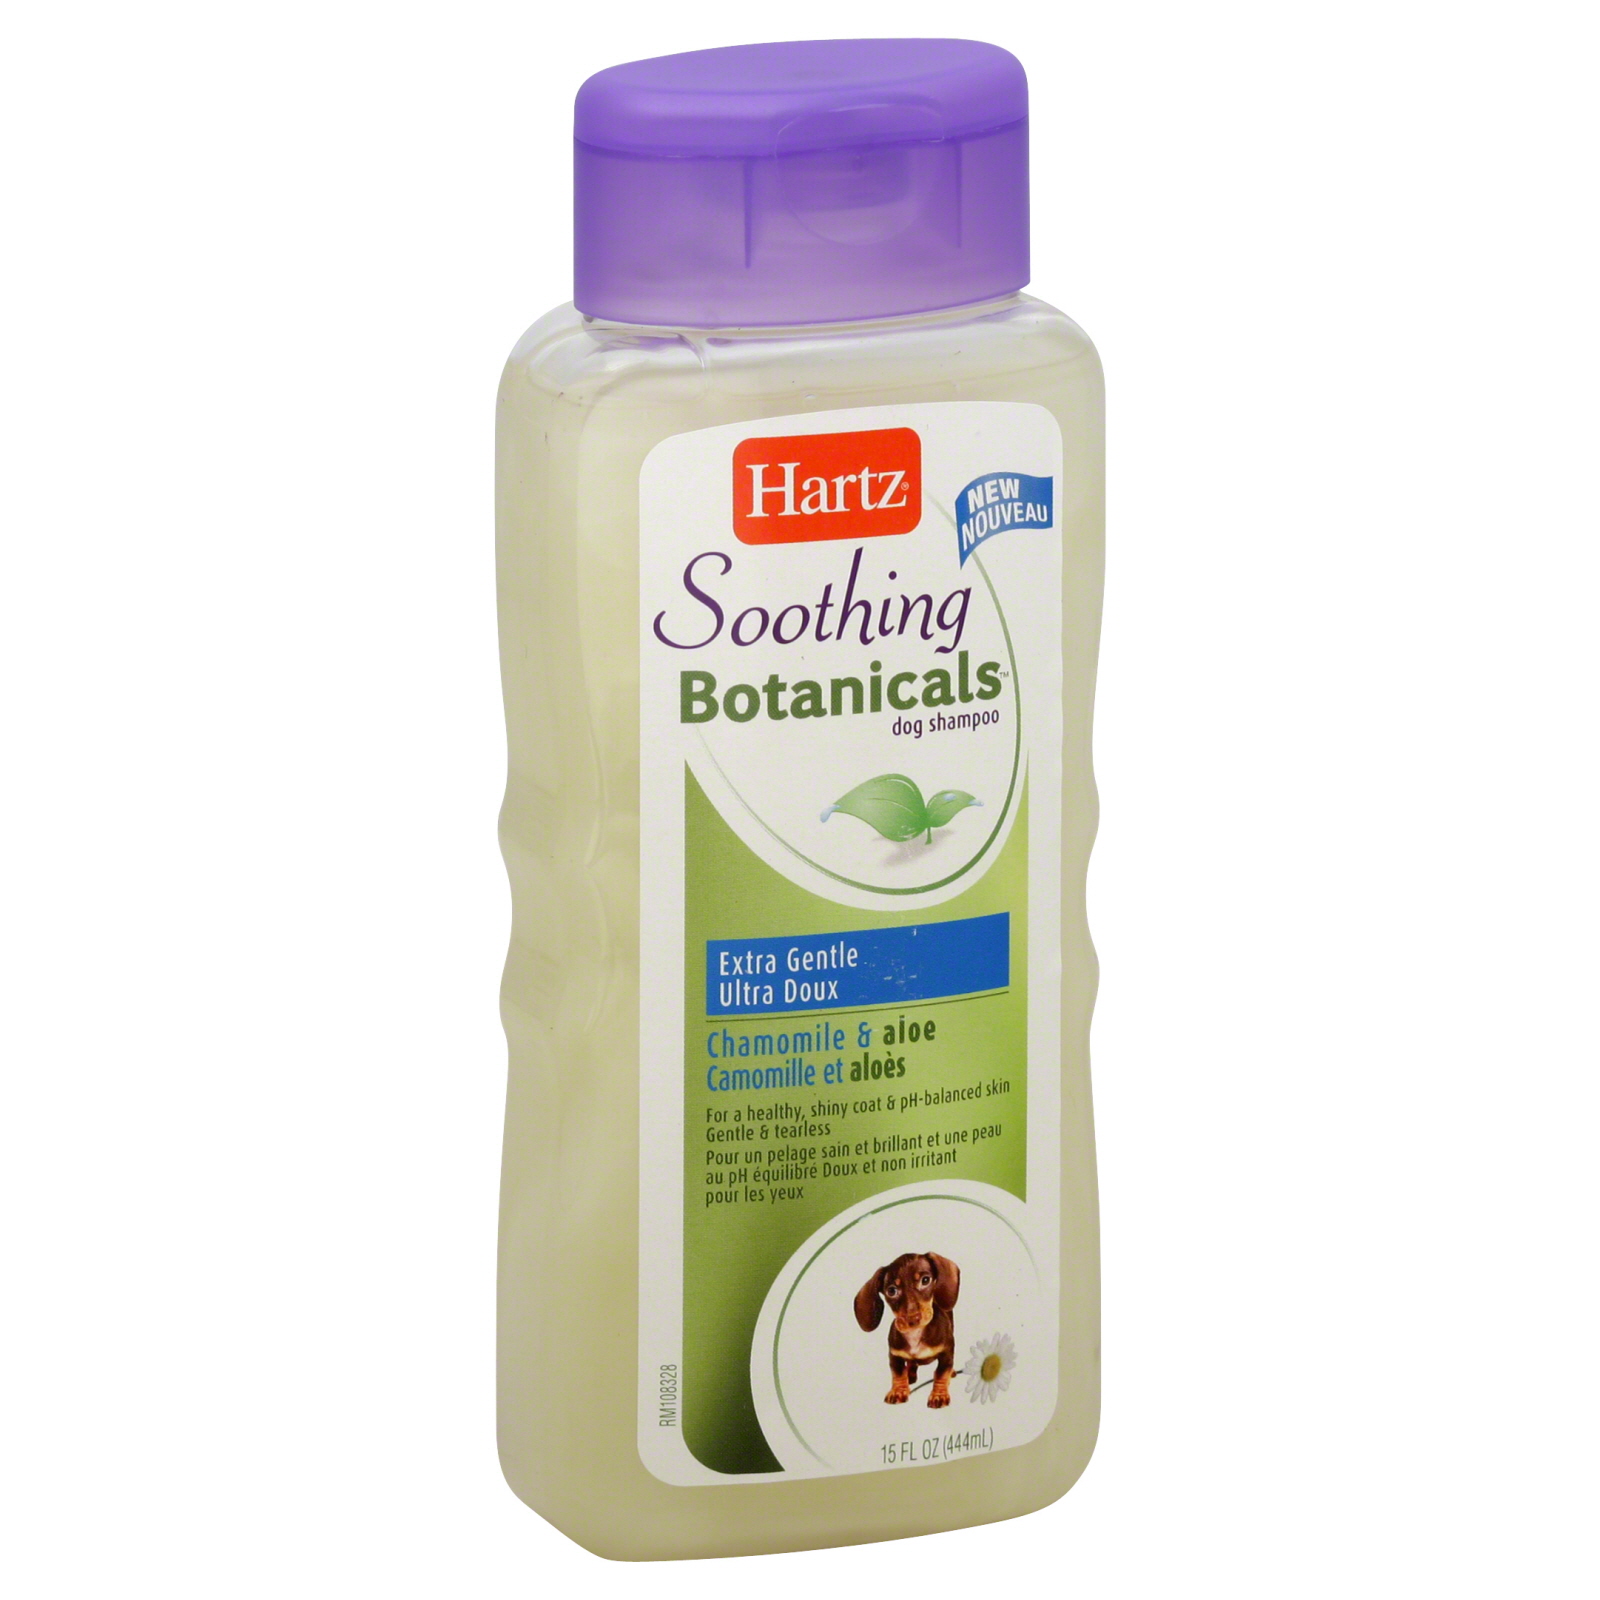 Hartz Soothing Botanicals Dog Shampoo, Extra Gentle, Chamomile & Aloe, 15 fl oz (444 ml)